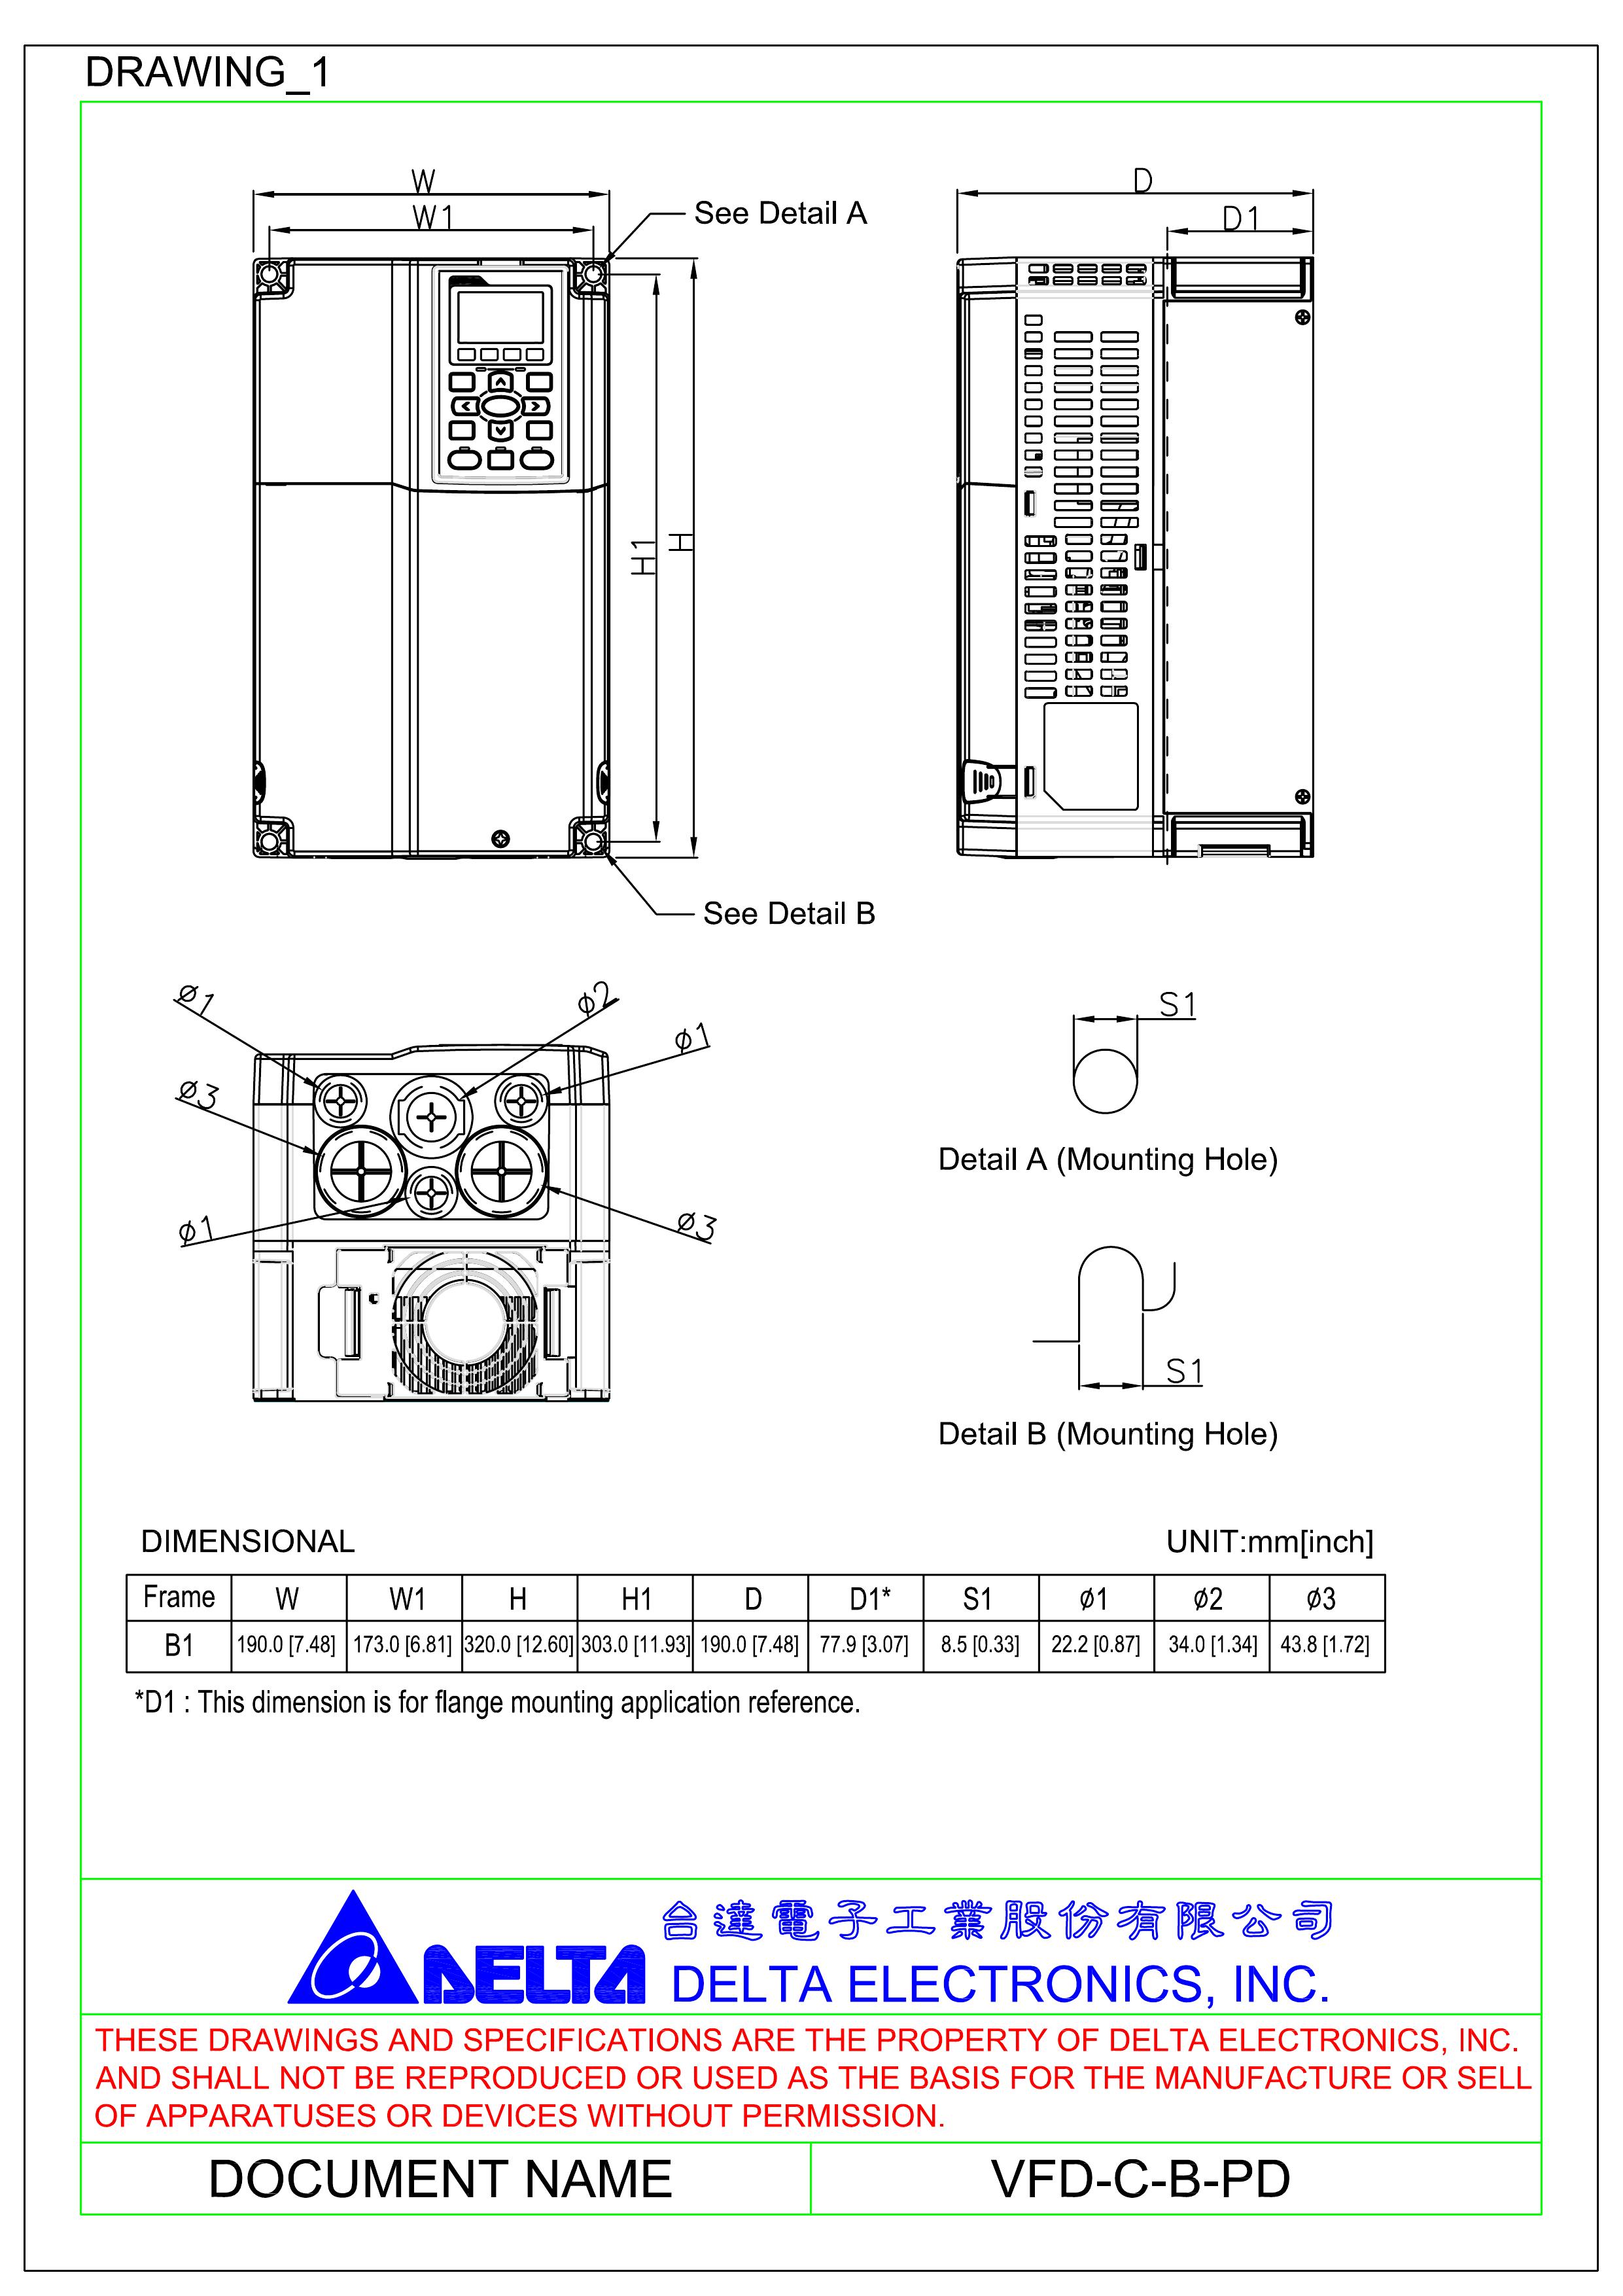 3Com VFD-C-B-PD Gas Grill User Manual